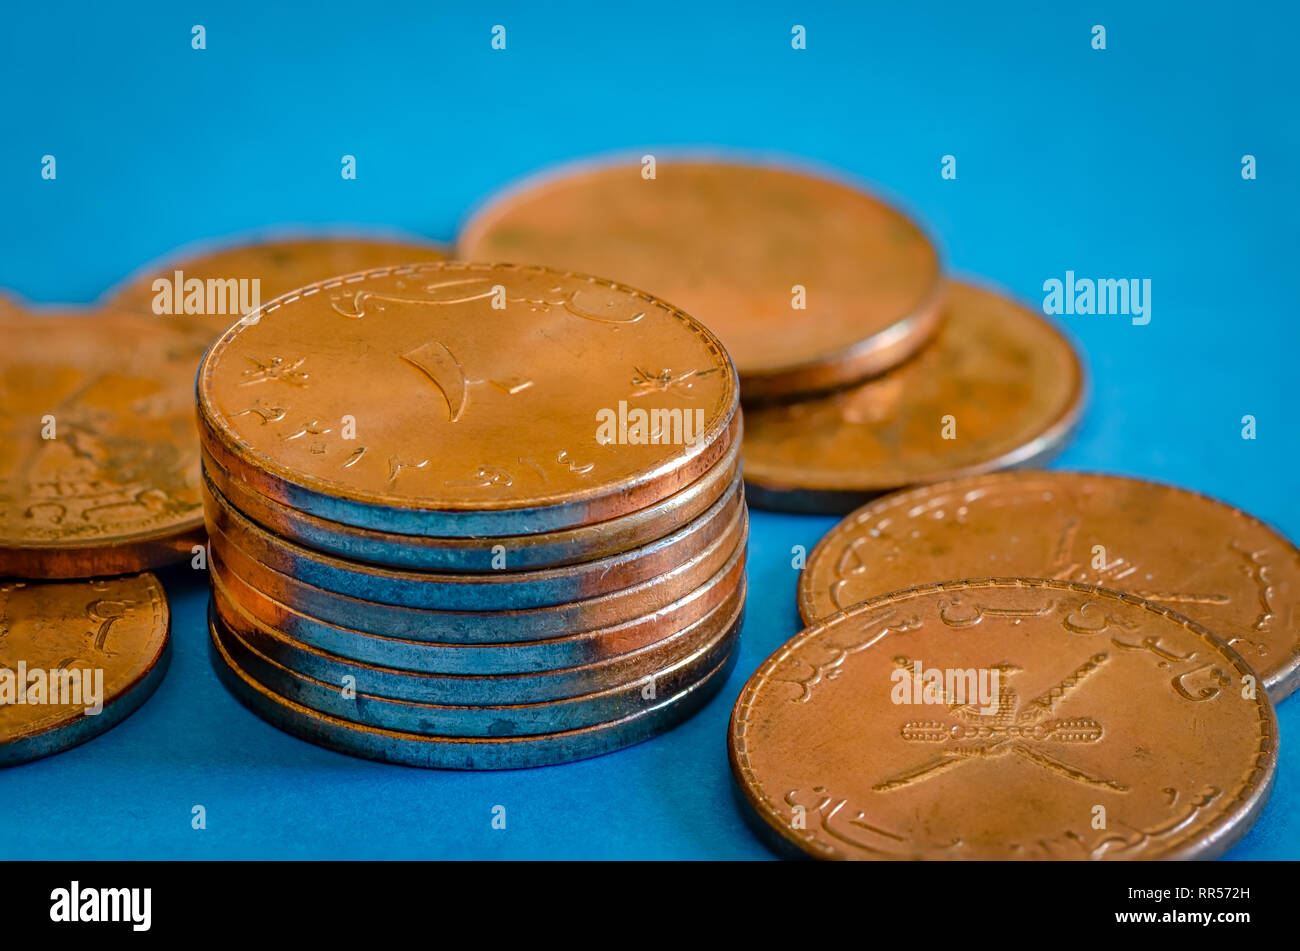 Nahaufnahme von 10 Baiza Bronze Münzen auf blauem Hintergrund. Sultanat Oman Währung. Stockfoto